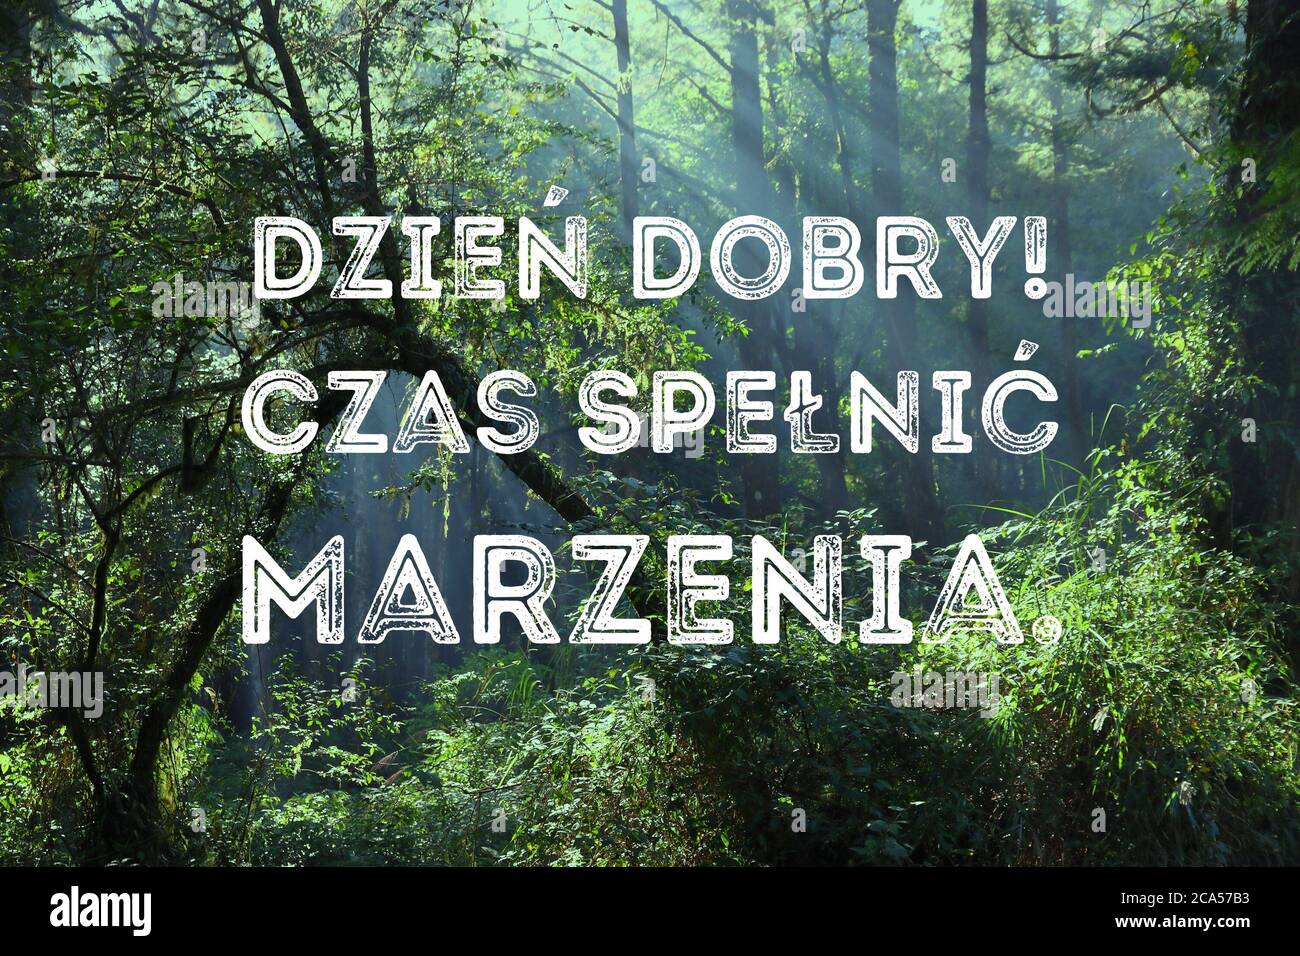 Dzien dobry, czas spelnic marzenia (Guten Morgen, Zeit, Träume in polnischer Sprache zu erfüllen). Motivationsposter in polnischer Sprache. Stockfoto